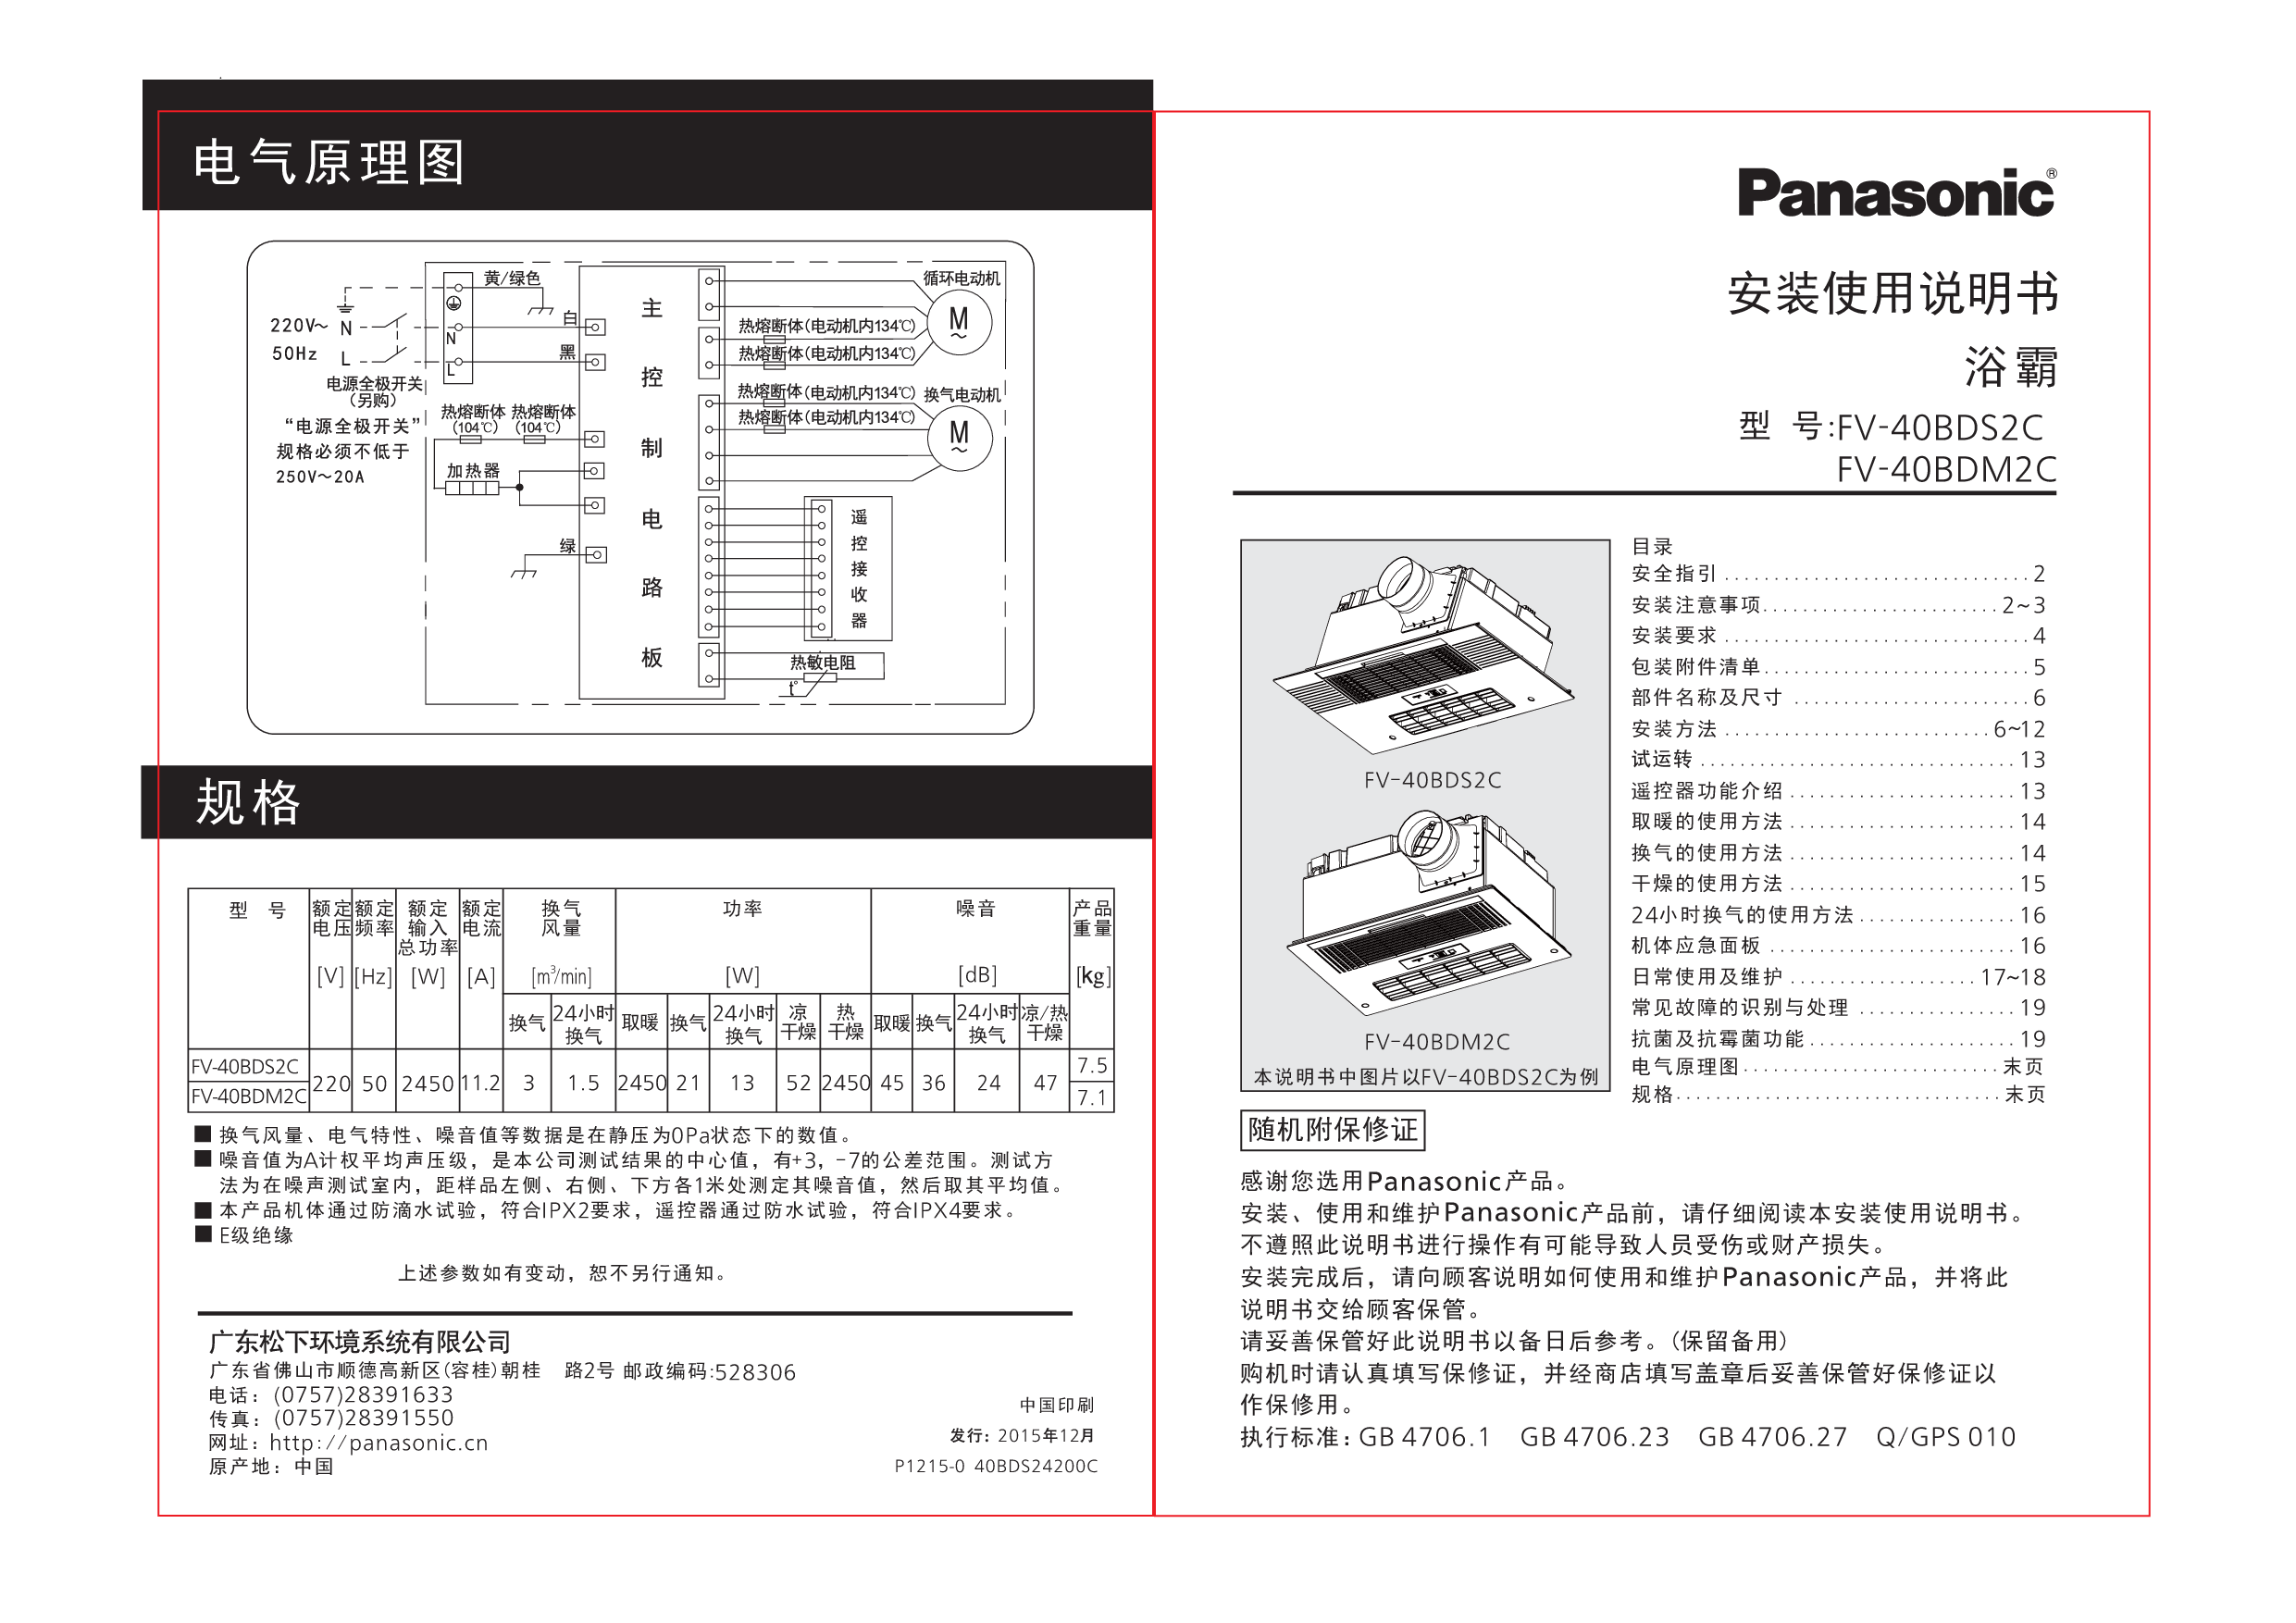 松下 Panasonic FV-40BDM2C 安装使用说明书 封面